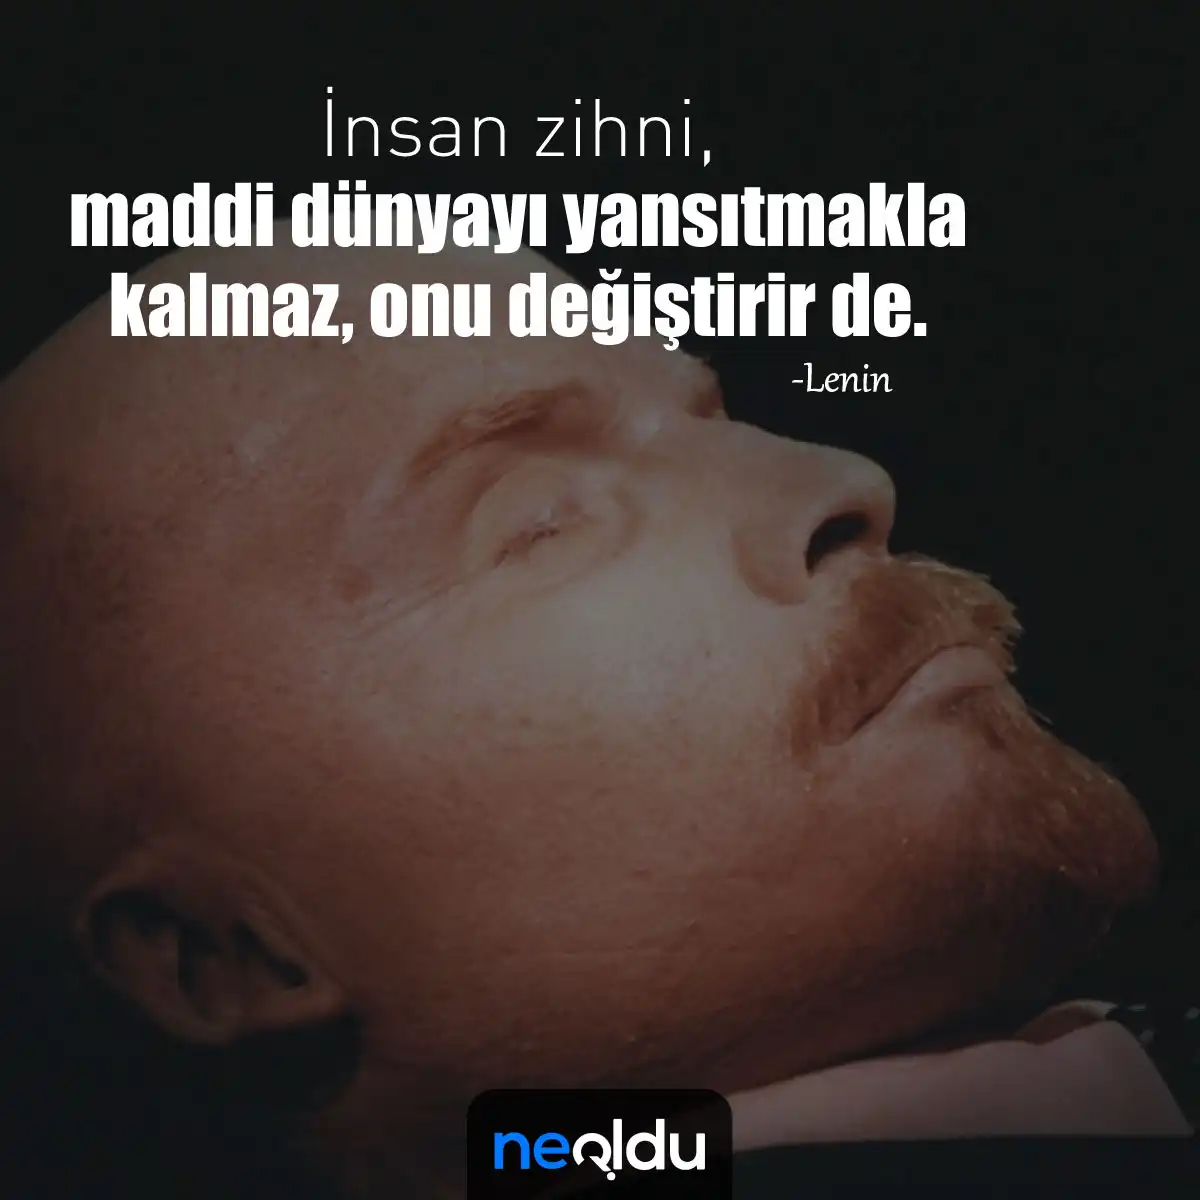 Vladimir Lenin Sözleri